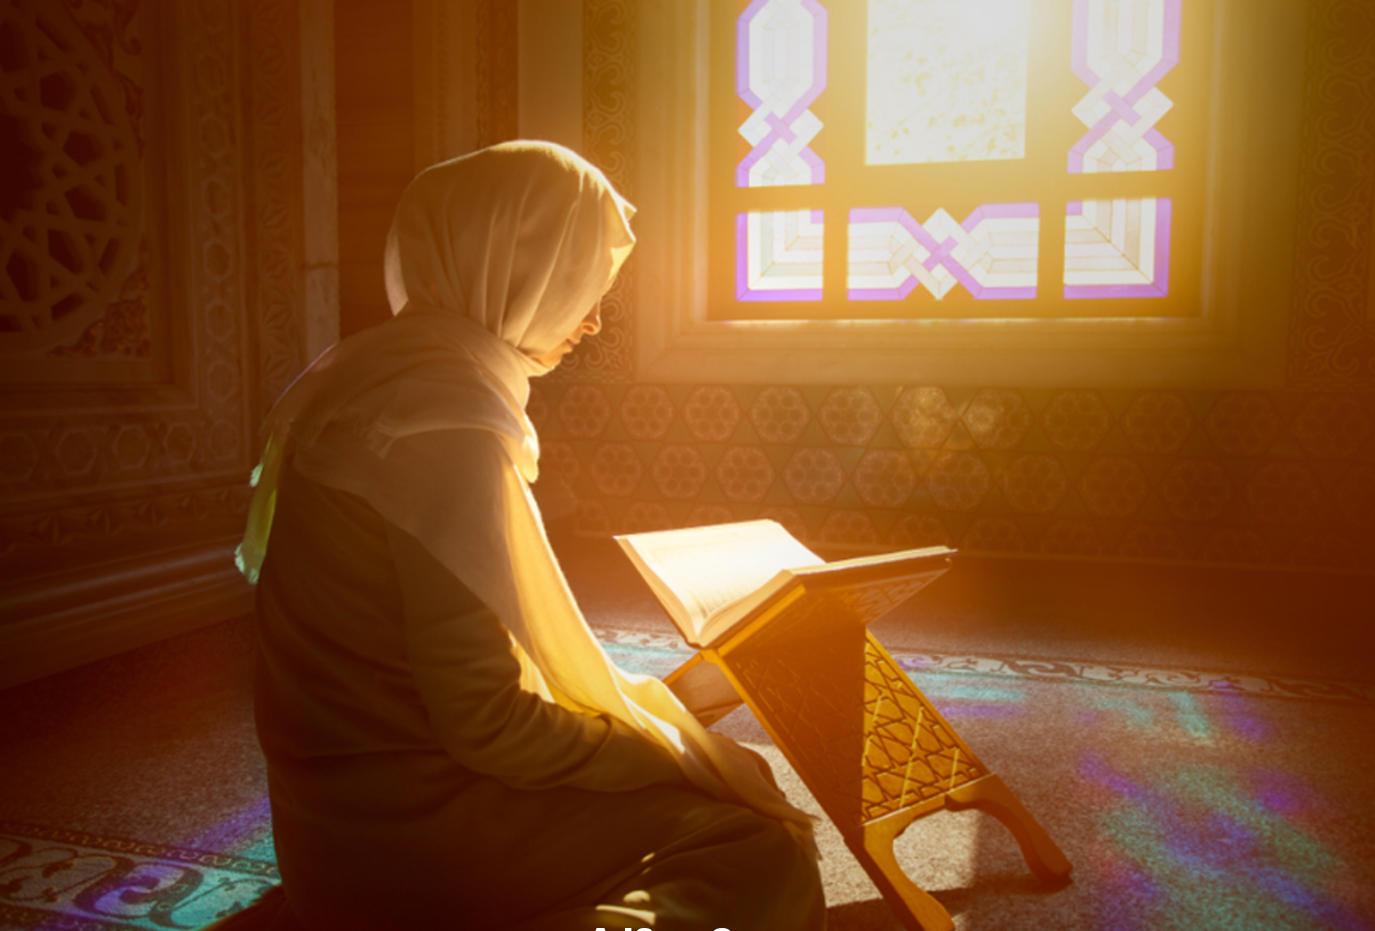 ادعية الرسول في رمضان عن كافة امور المسلم وحياته كاملة مستجابة